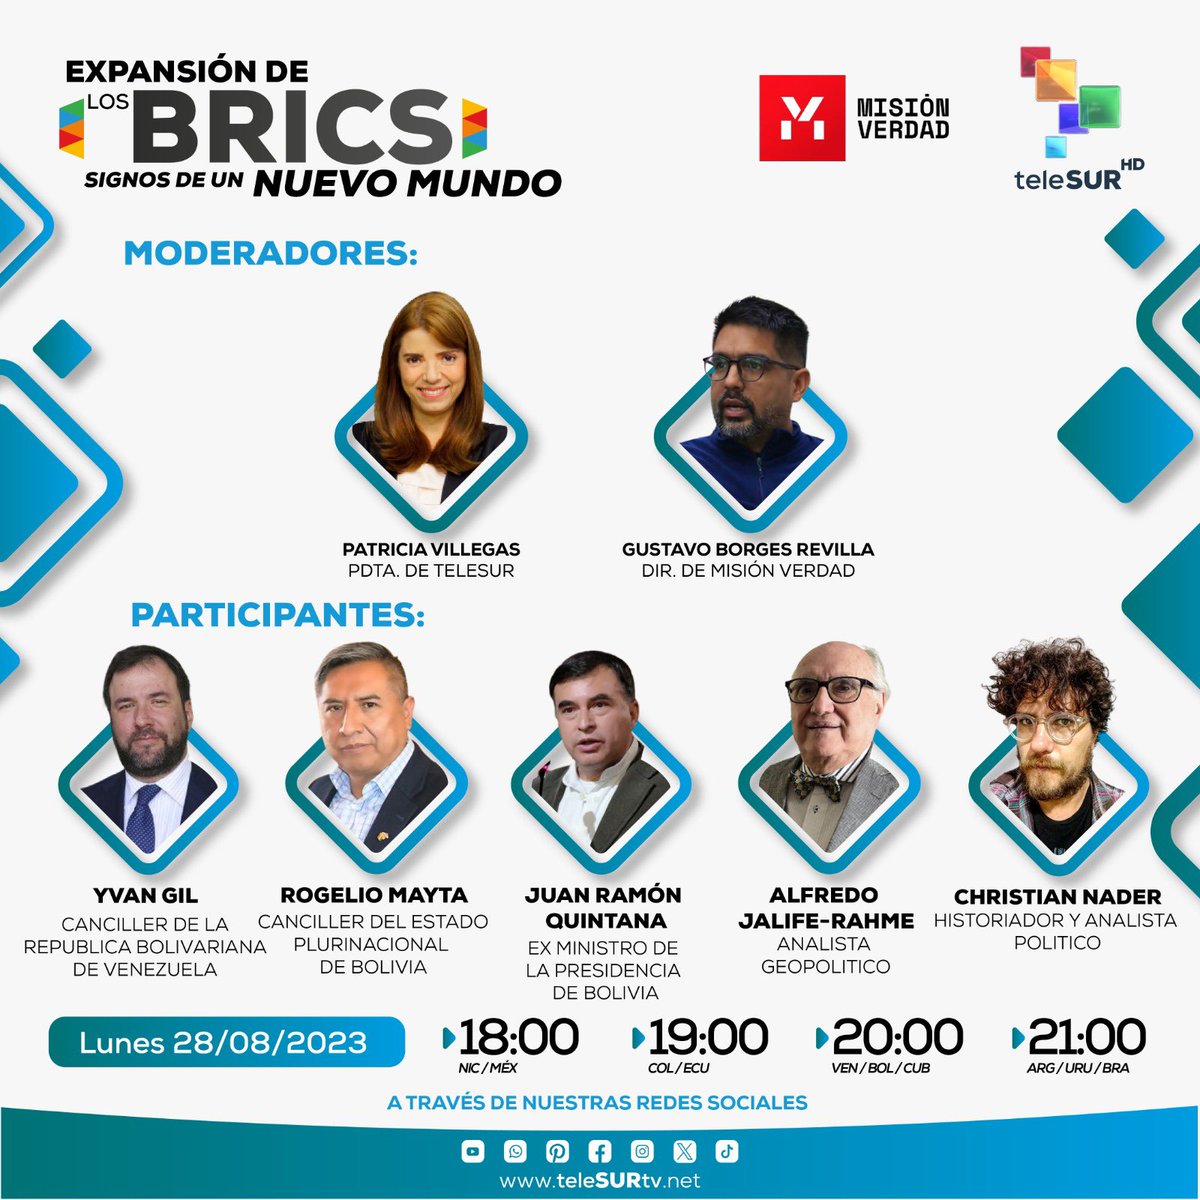 Esta noche por las redes sociales de @Mision_Verdad y @teleSURtv nos juntamos con “ gente que sabe” para hablar sobre los escenarios que se abren tras la cumbre BRICS. Los espero, junto a @GBorgesRevilla